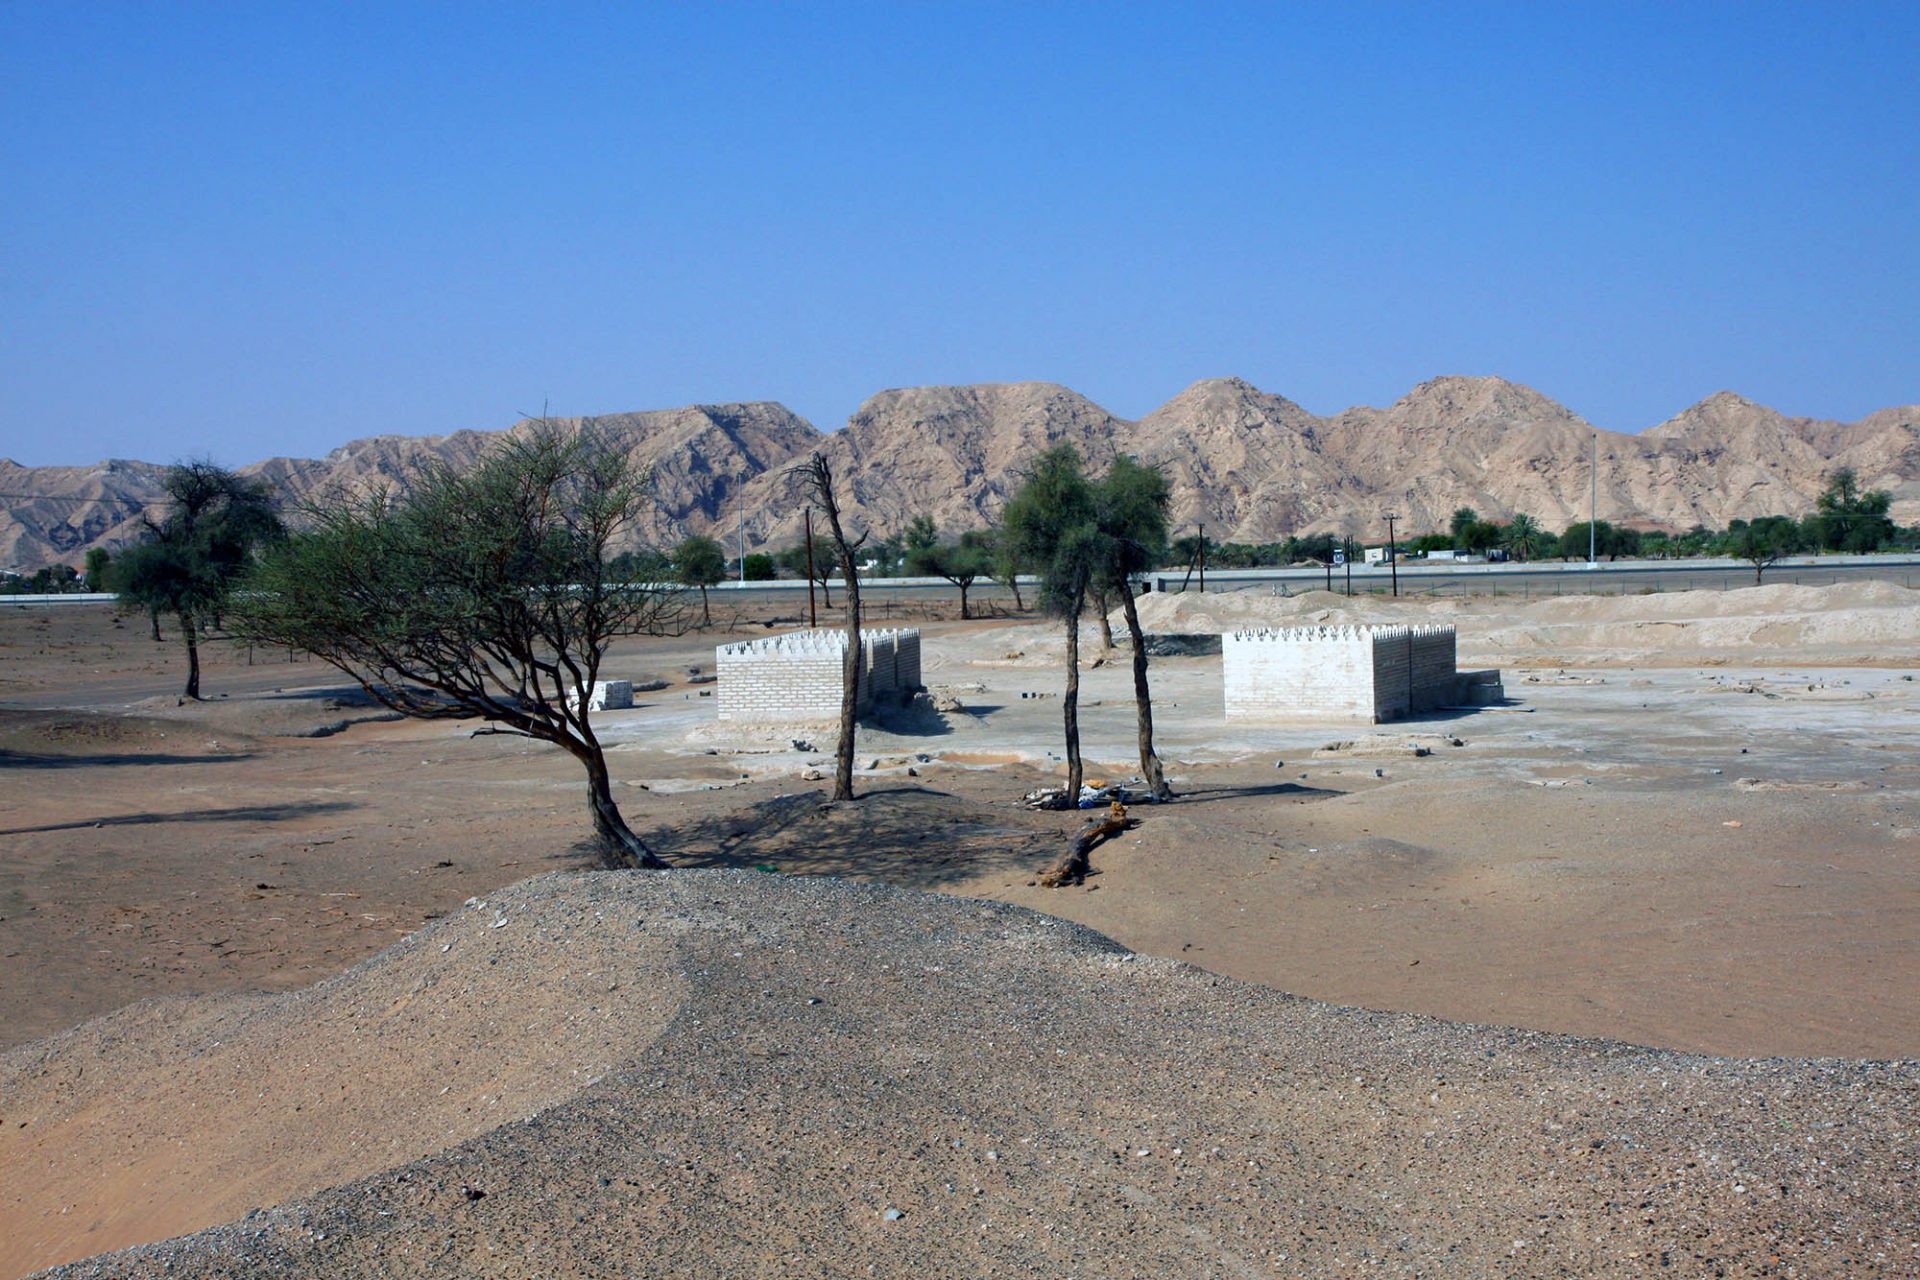 Mleiha. Am Fuße des Jebel Faya befinden sich viele archäologische Stätten, darunter ein Fort, mehrere Grabkammern und weitere Siedlungs- und Bestattungsanlagen.